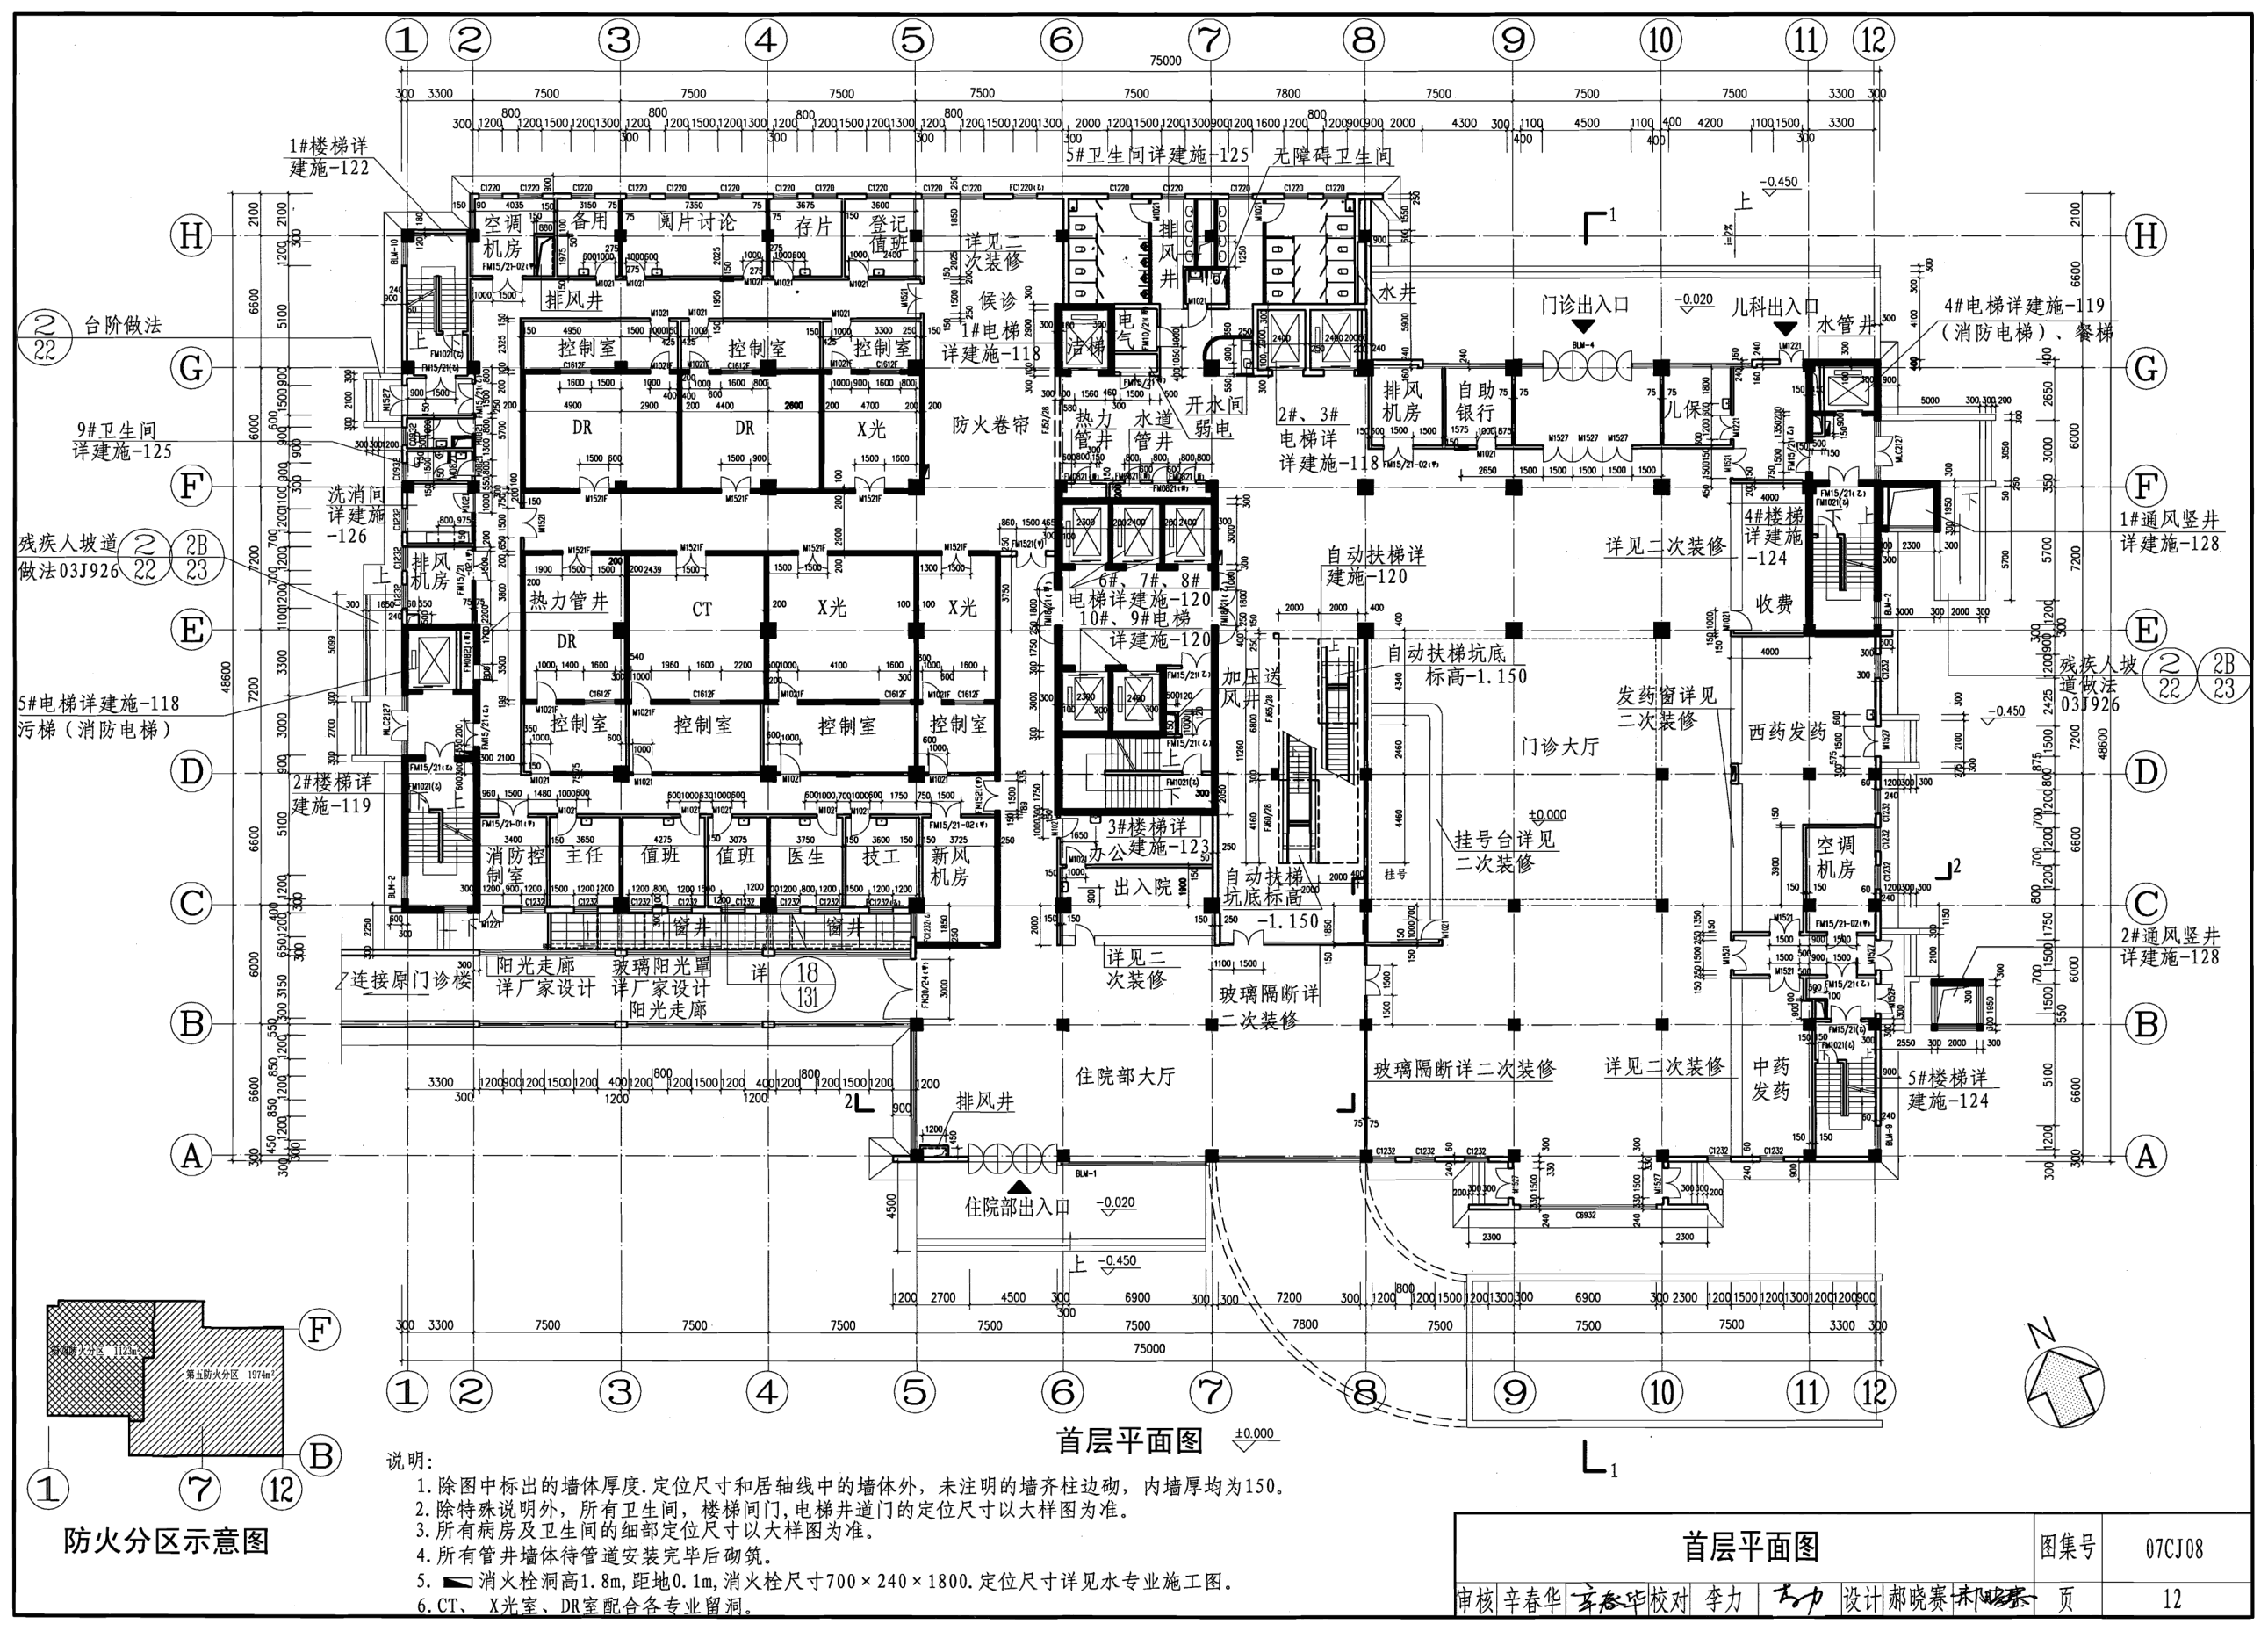 07CJ08：医院建筑施工图实例（参考图集） - 国家建筑标准设计网